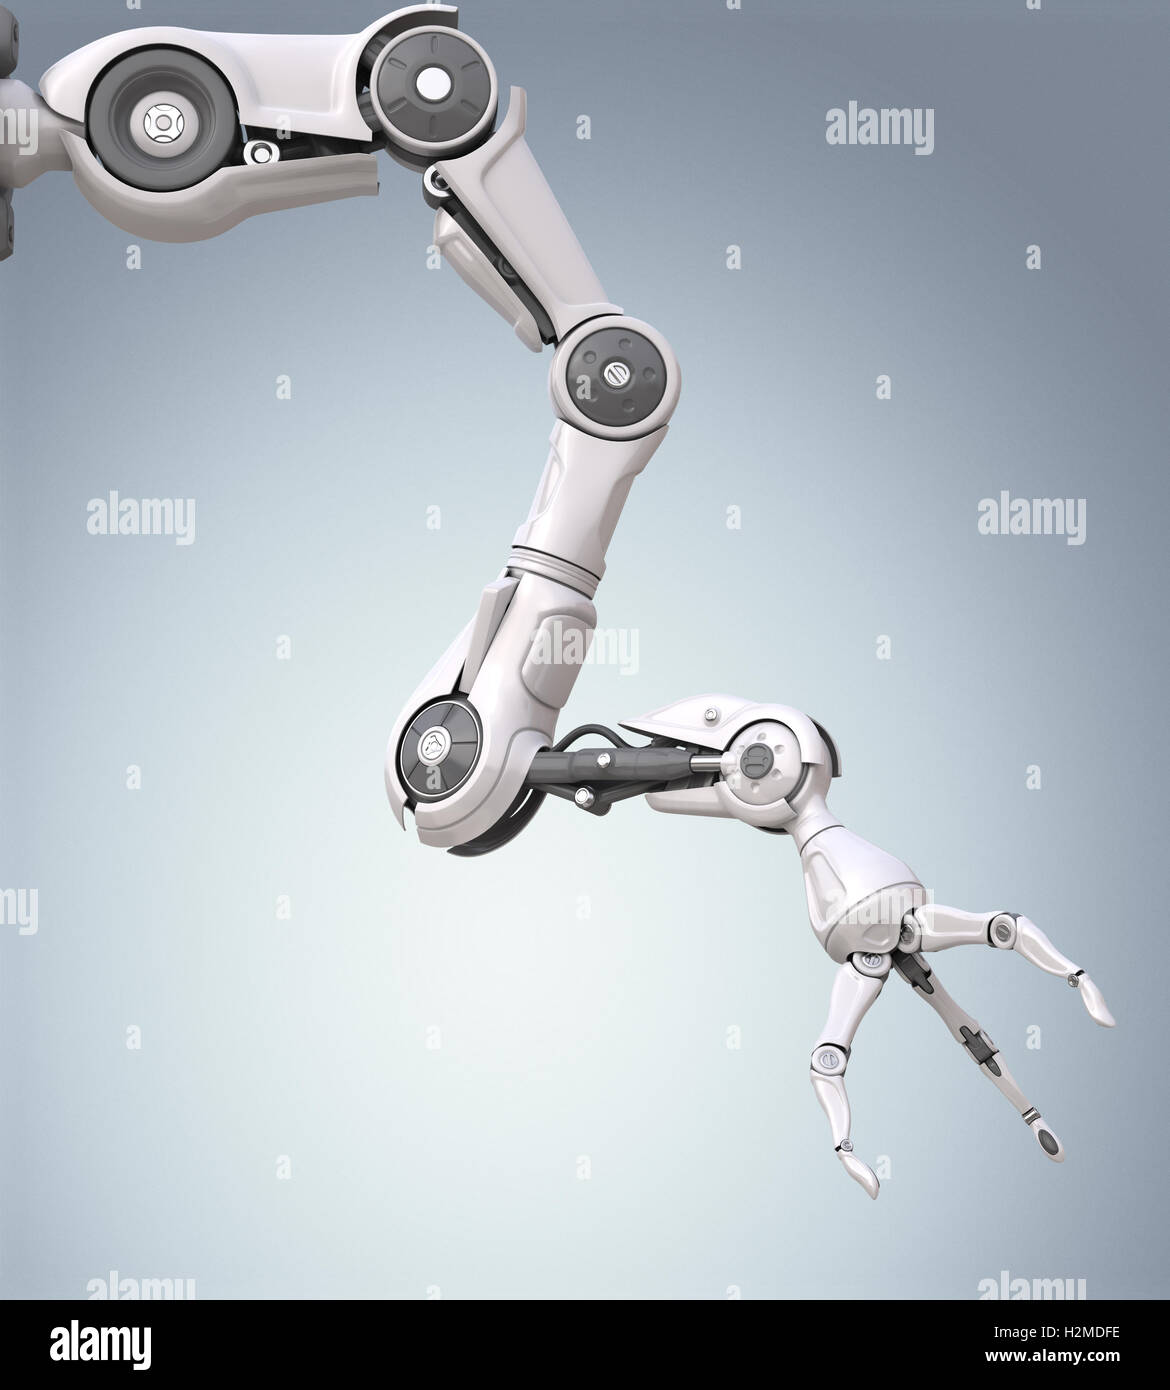 Brazo robótico futurista con mecánico Foto de stock